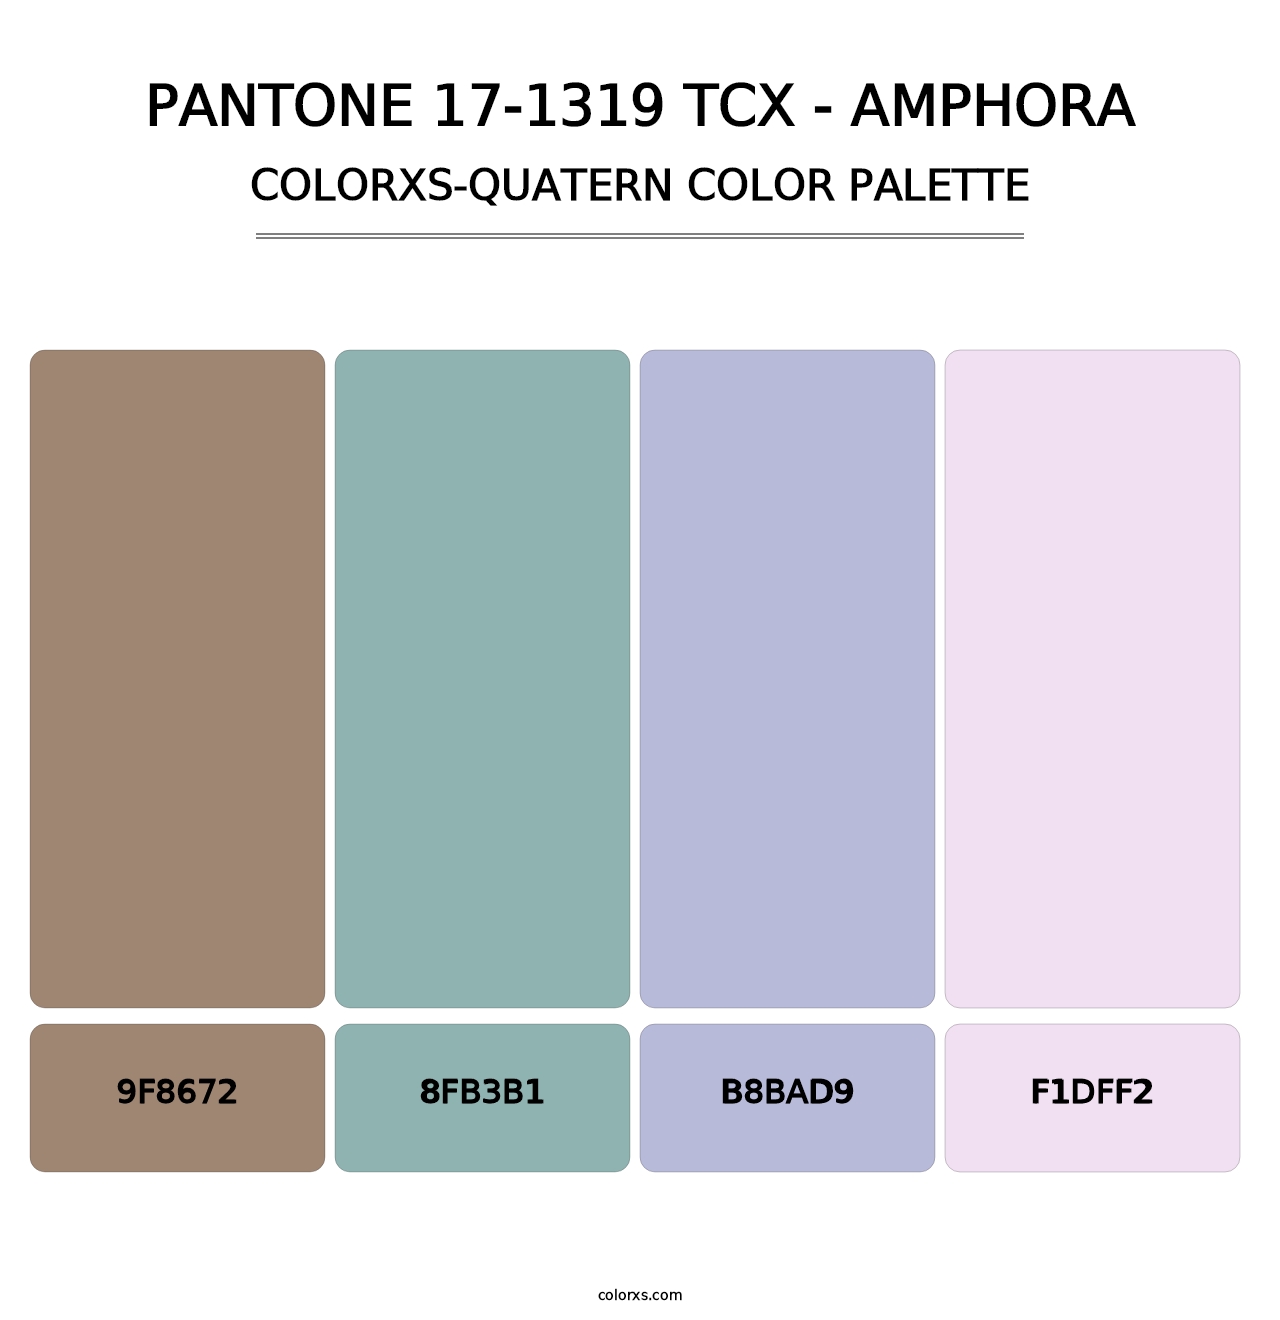 PANTONE 17-1319 TCX - Amphora - Colorxs Quatern Palette